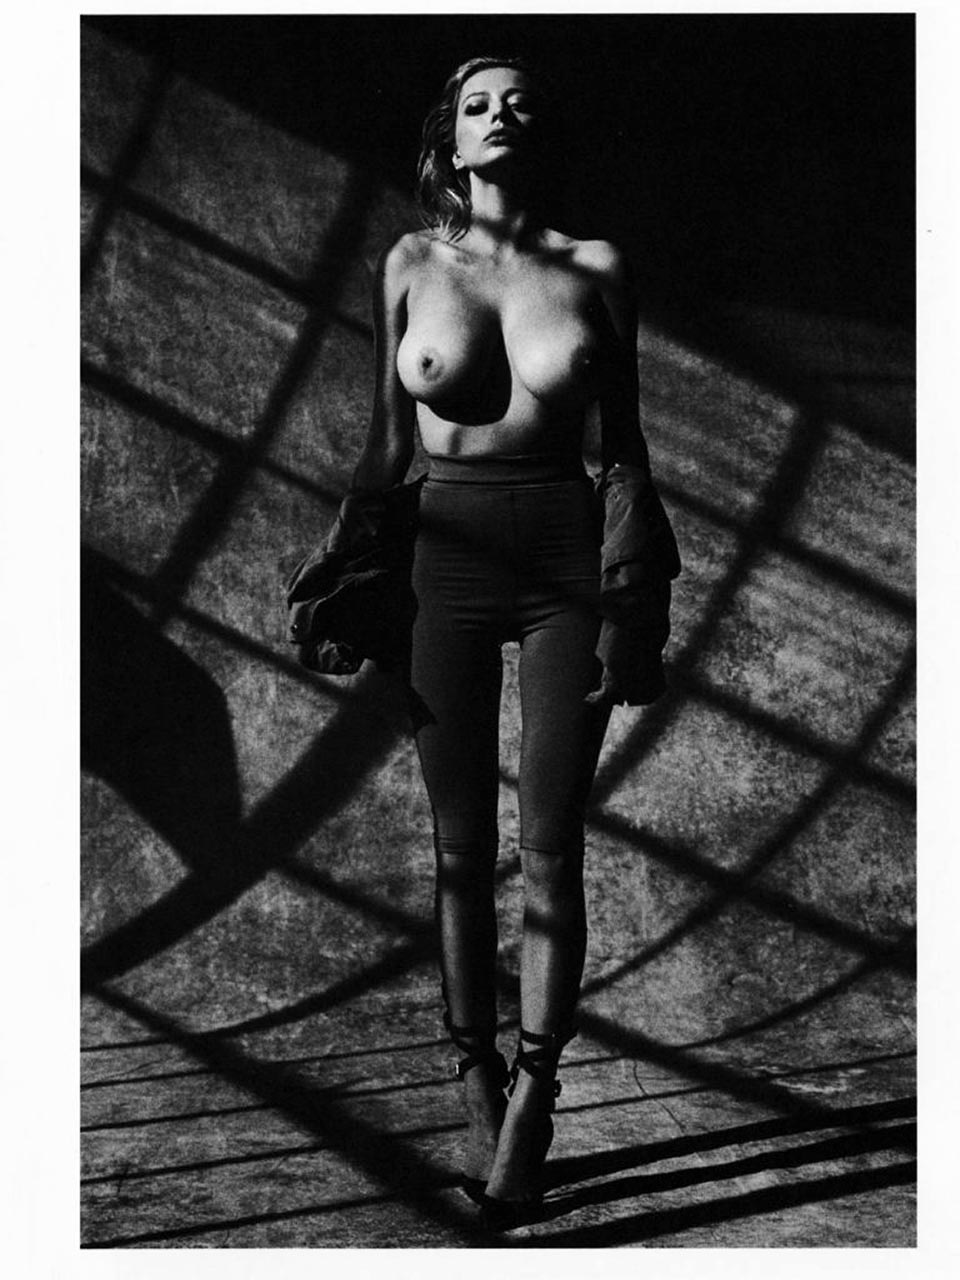 Caroline vreeland naked - 🧡 Caroline Vreeland Naked Photoshoot - Hot Cele....